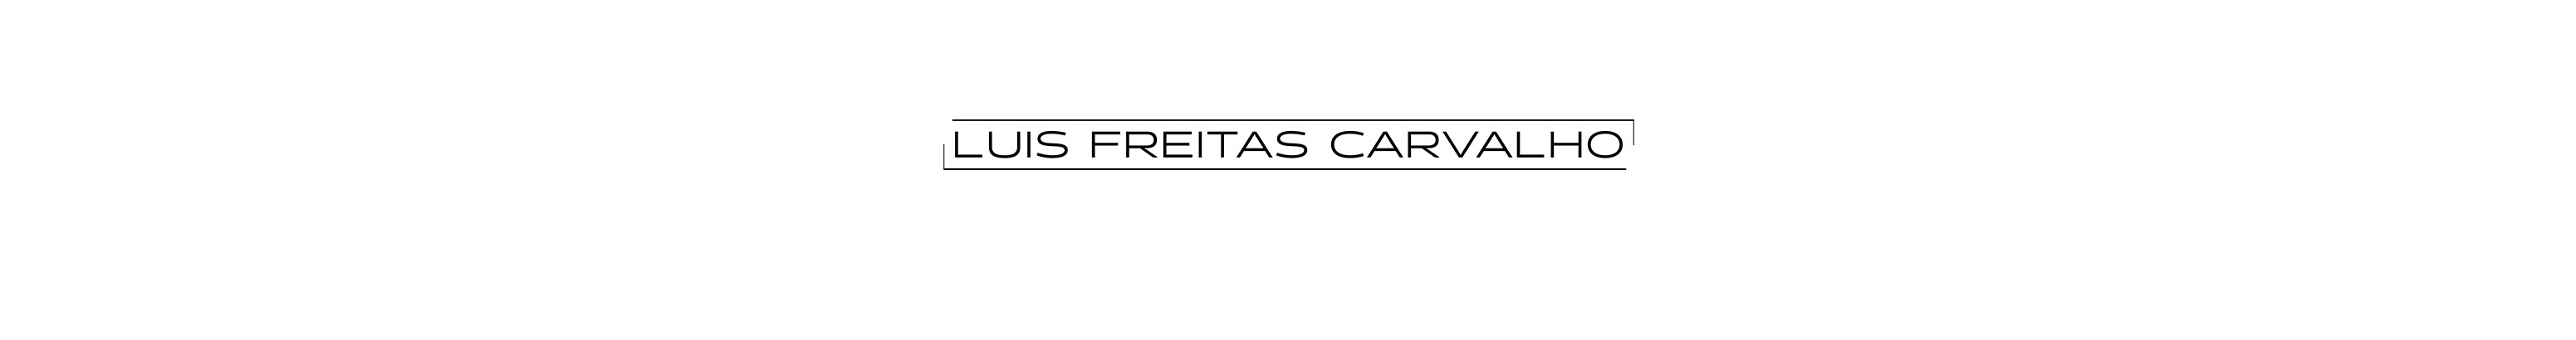 Luís Freitas Carvalho's profile banner